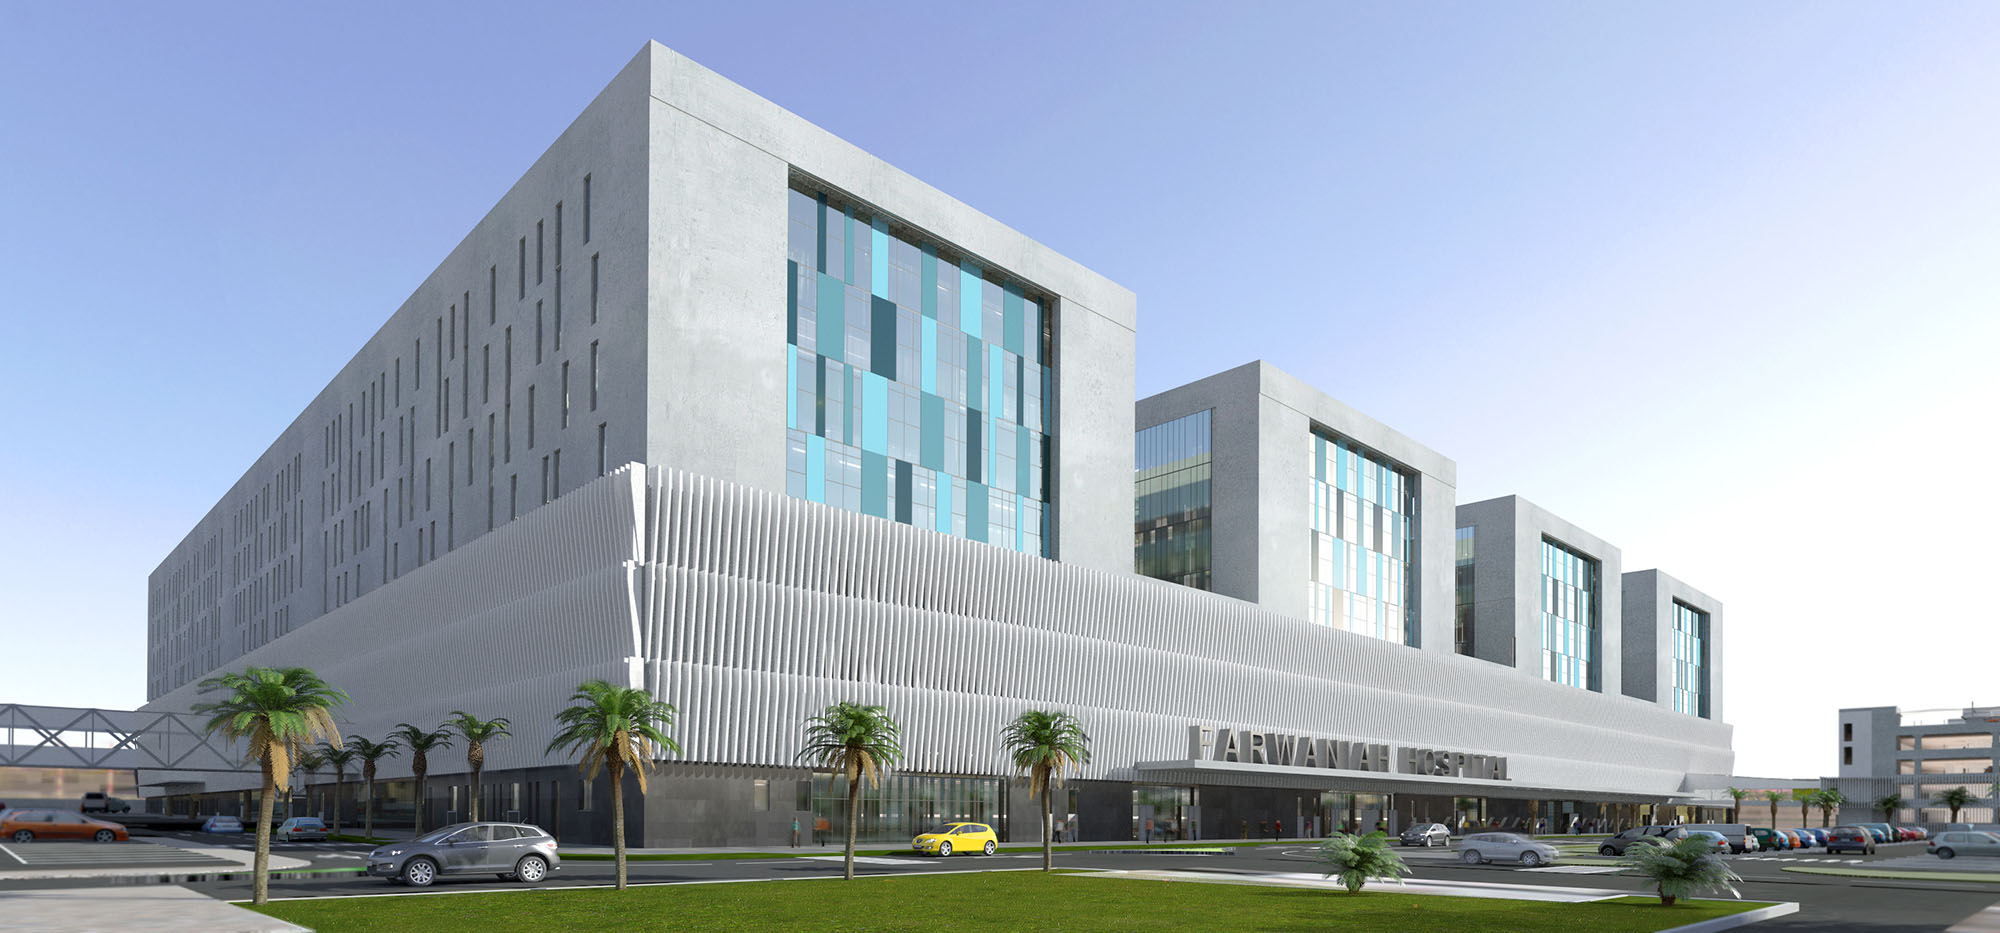 New Farwaniya Hospital